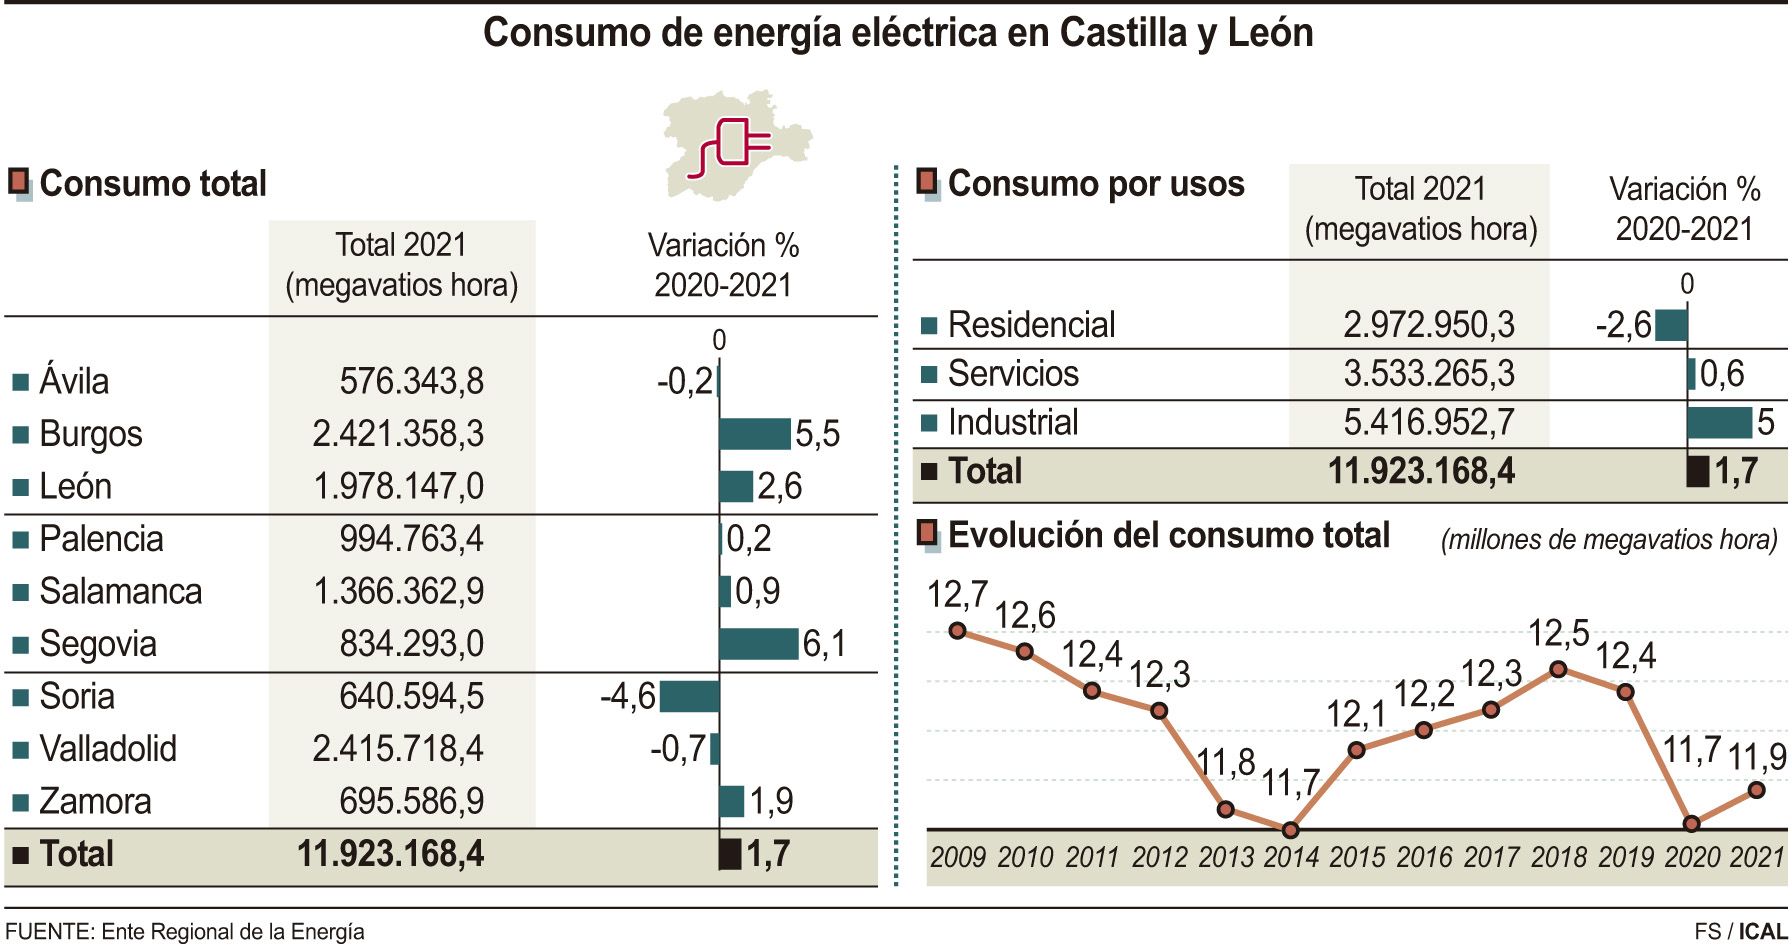 Consumo de energía eléctrica en Castilla y León